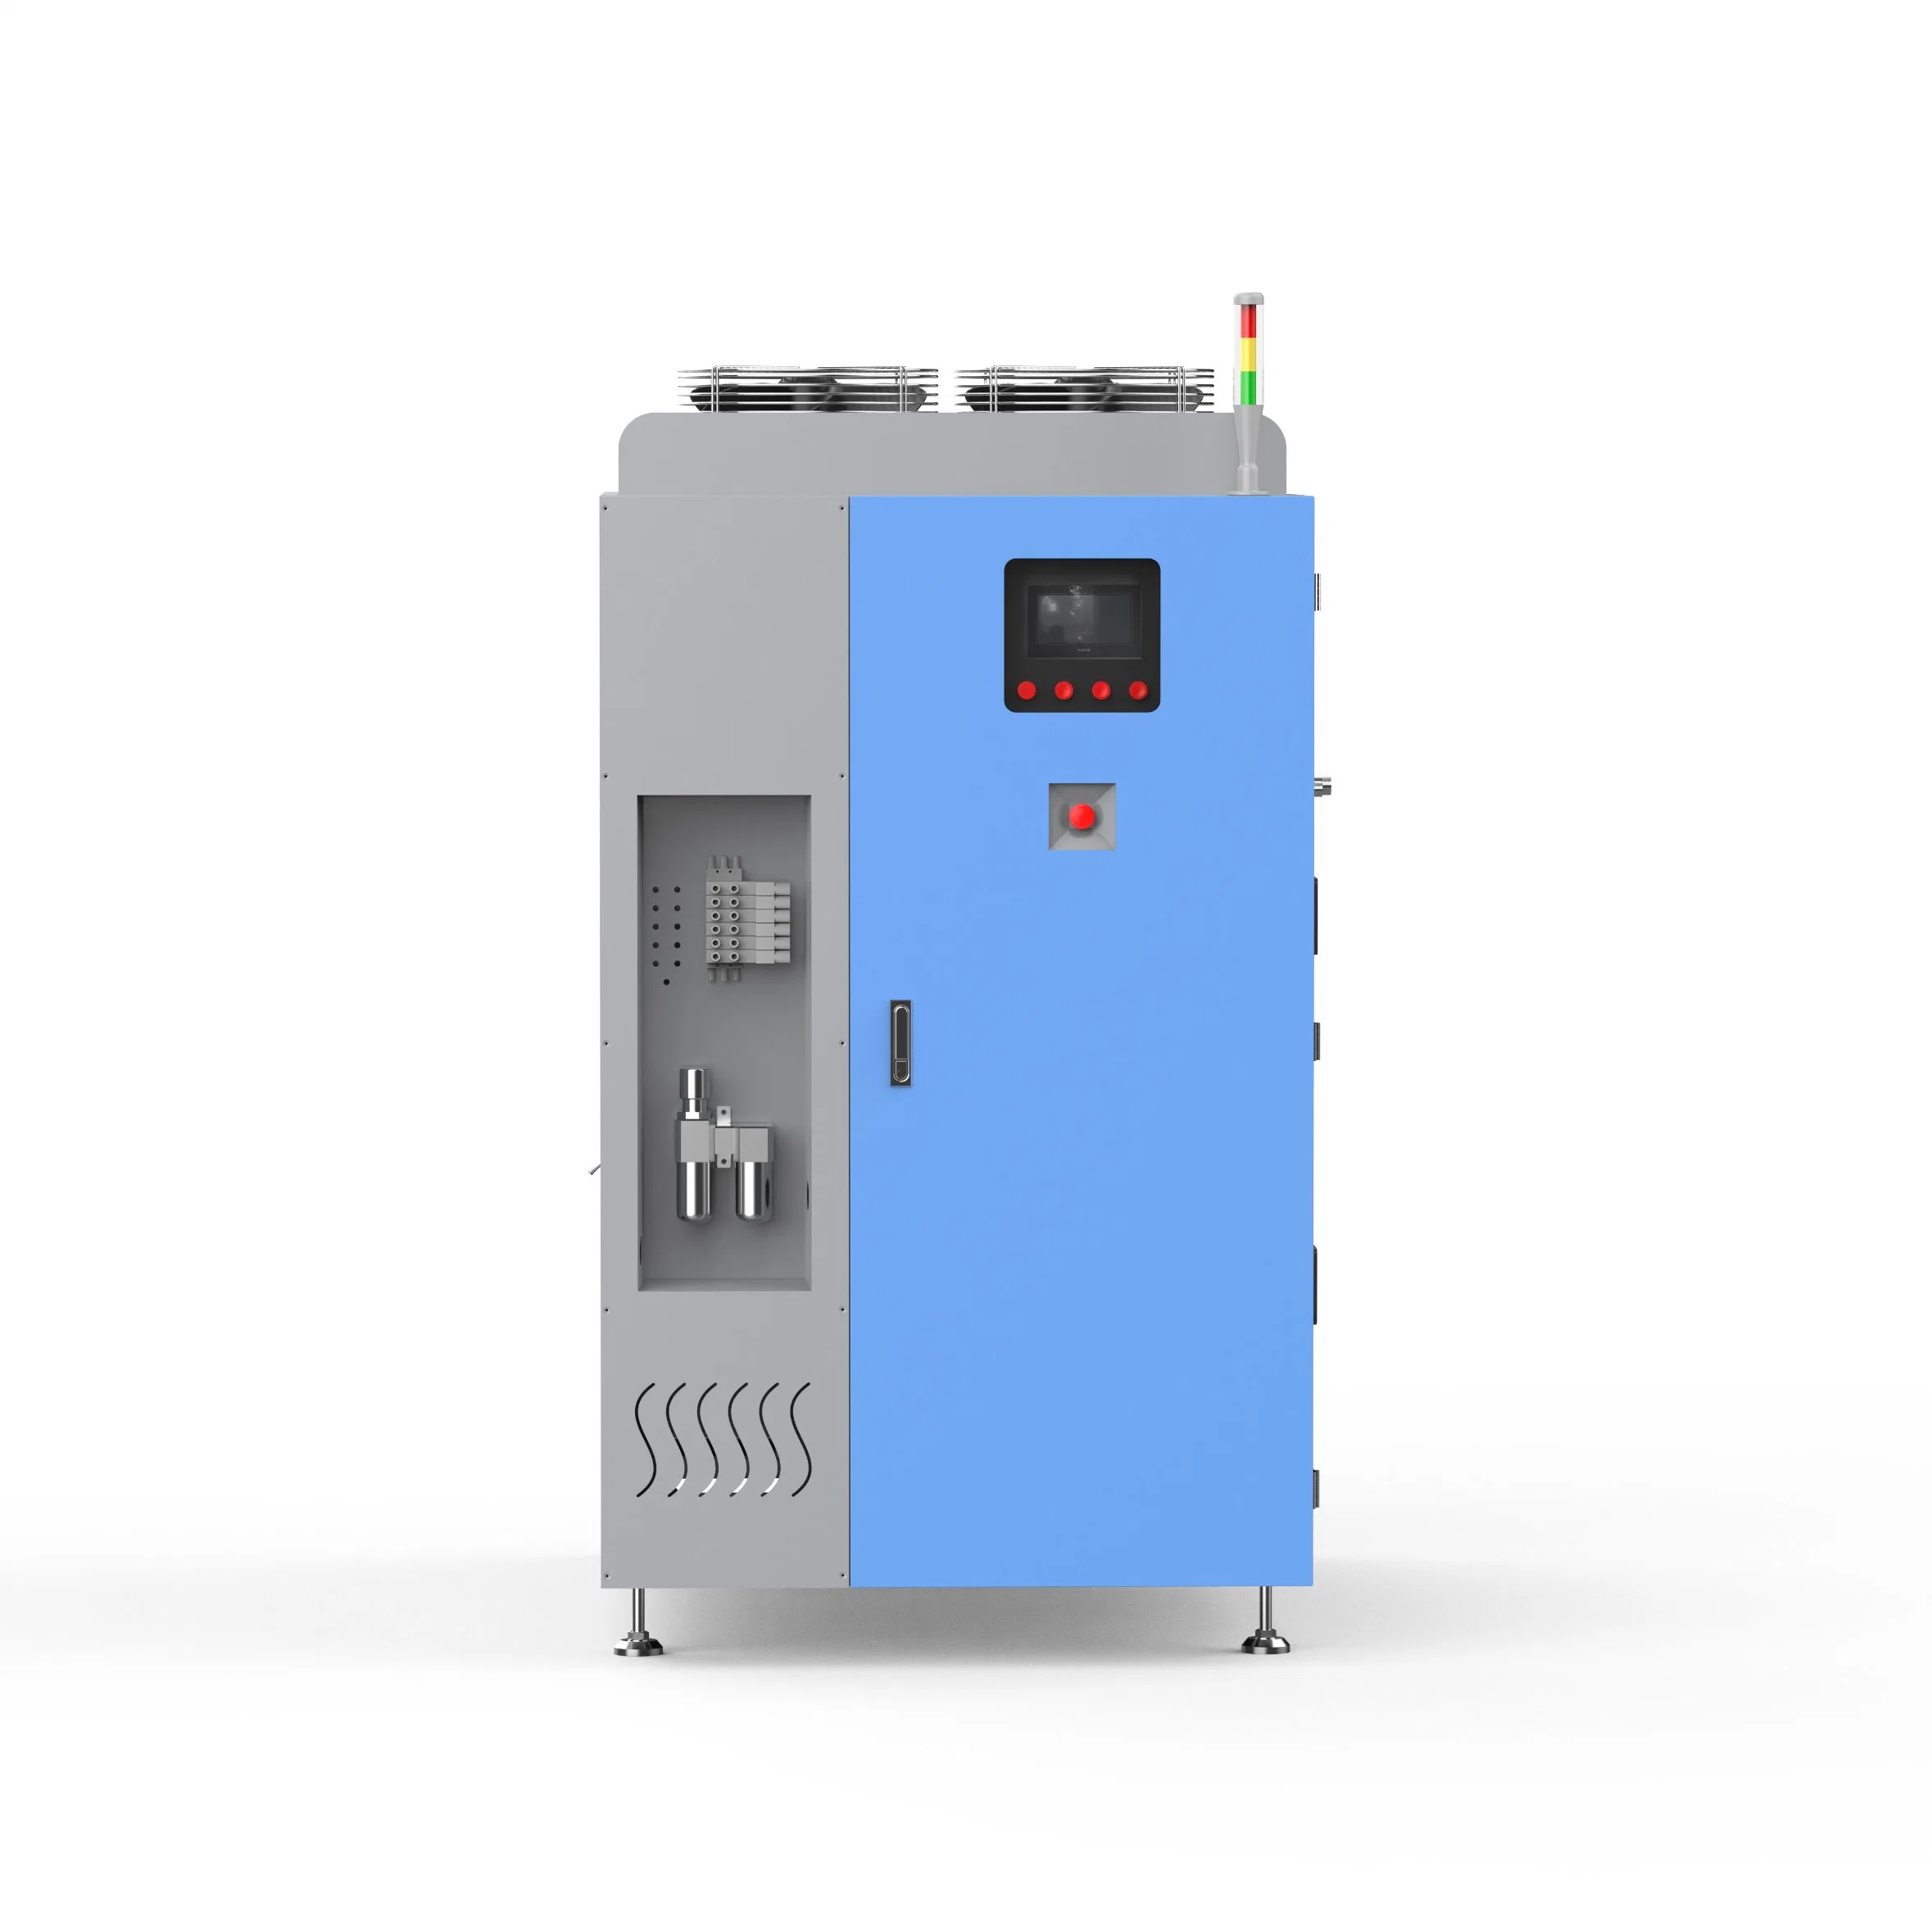 Hve-P1000evaporador da bomba de calor de pressão negativa, equipamento de tratamento de concentração de evaporação de líquido de arrefecimento aquoso